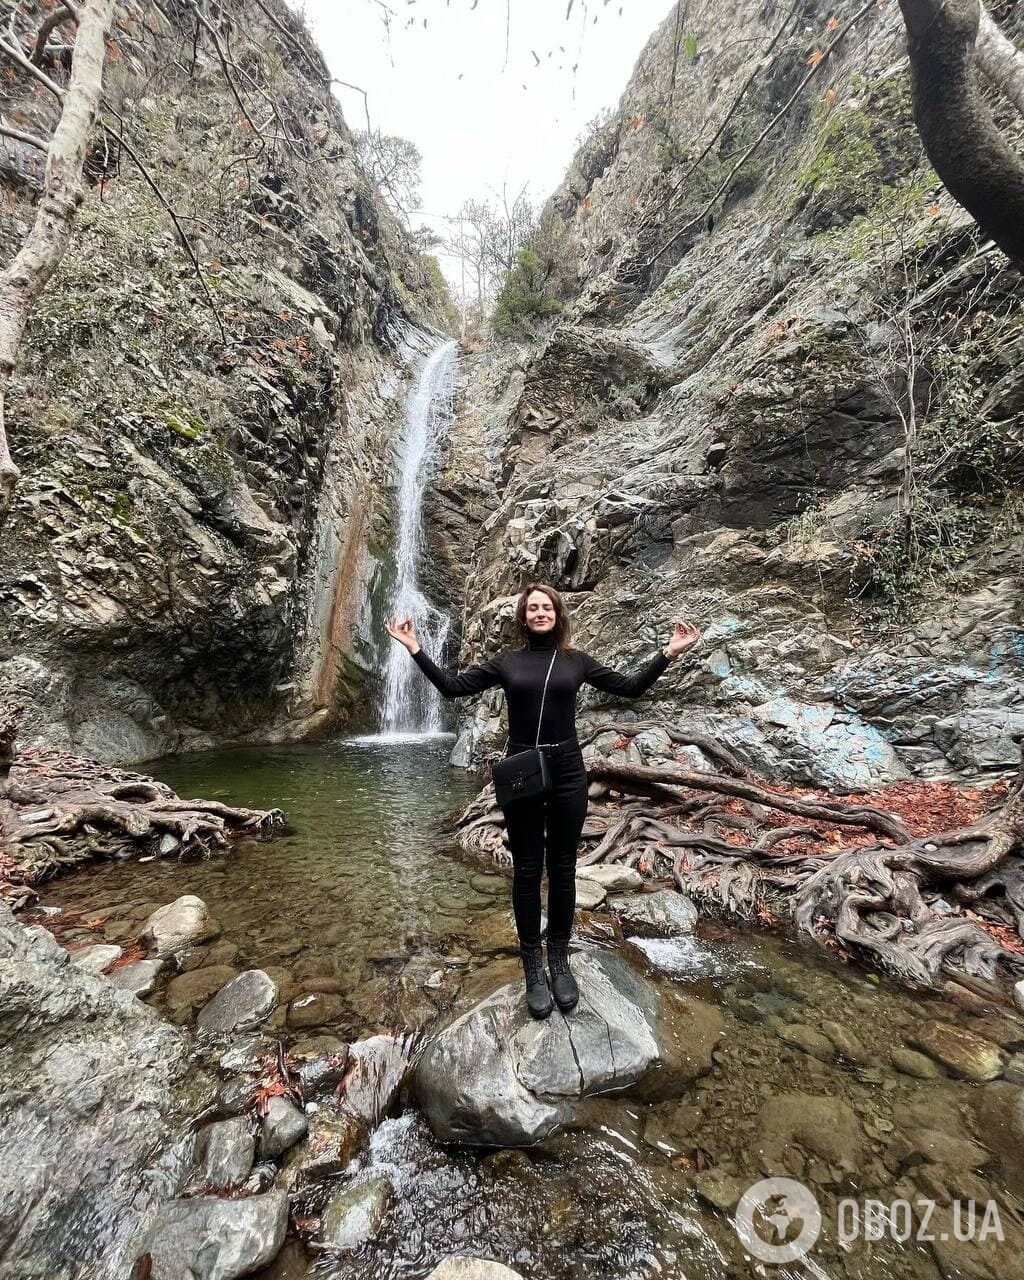 Водопад Милломерис